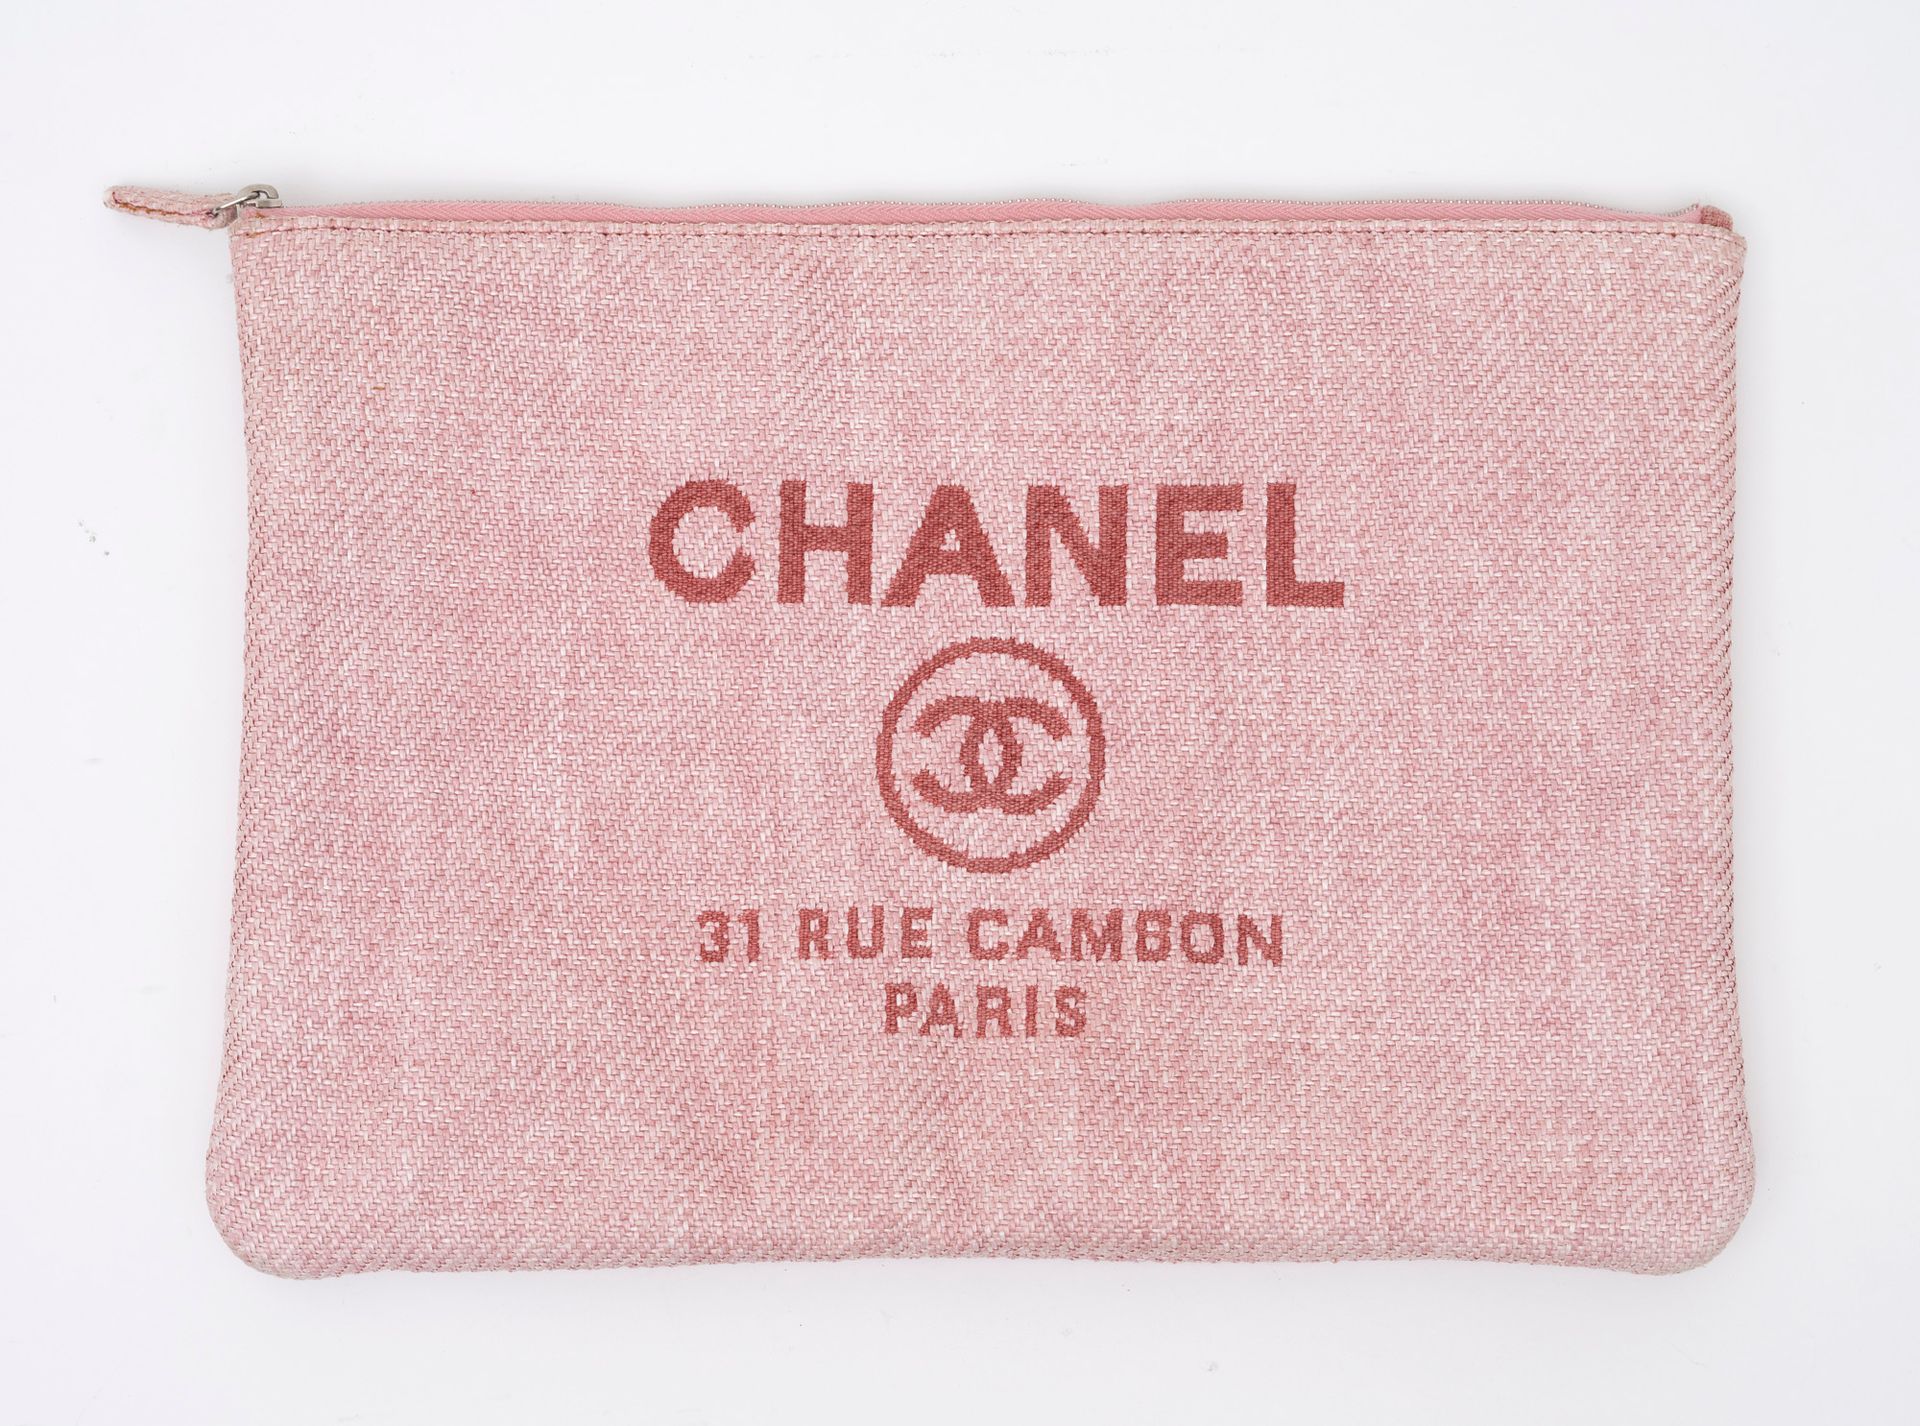 Chanel CHANEL Paris Pochette aus rosa Textil - Innenseite aus weißem Stoff - Ver&hellip;